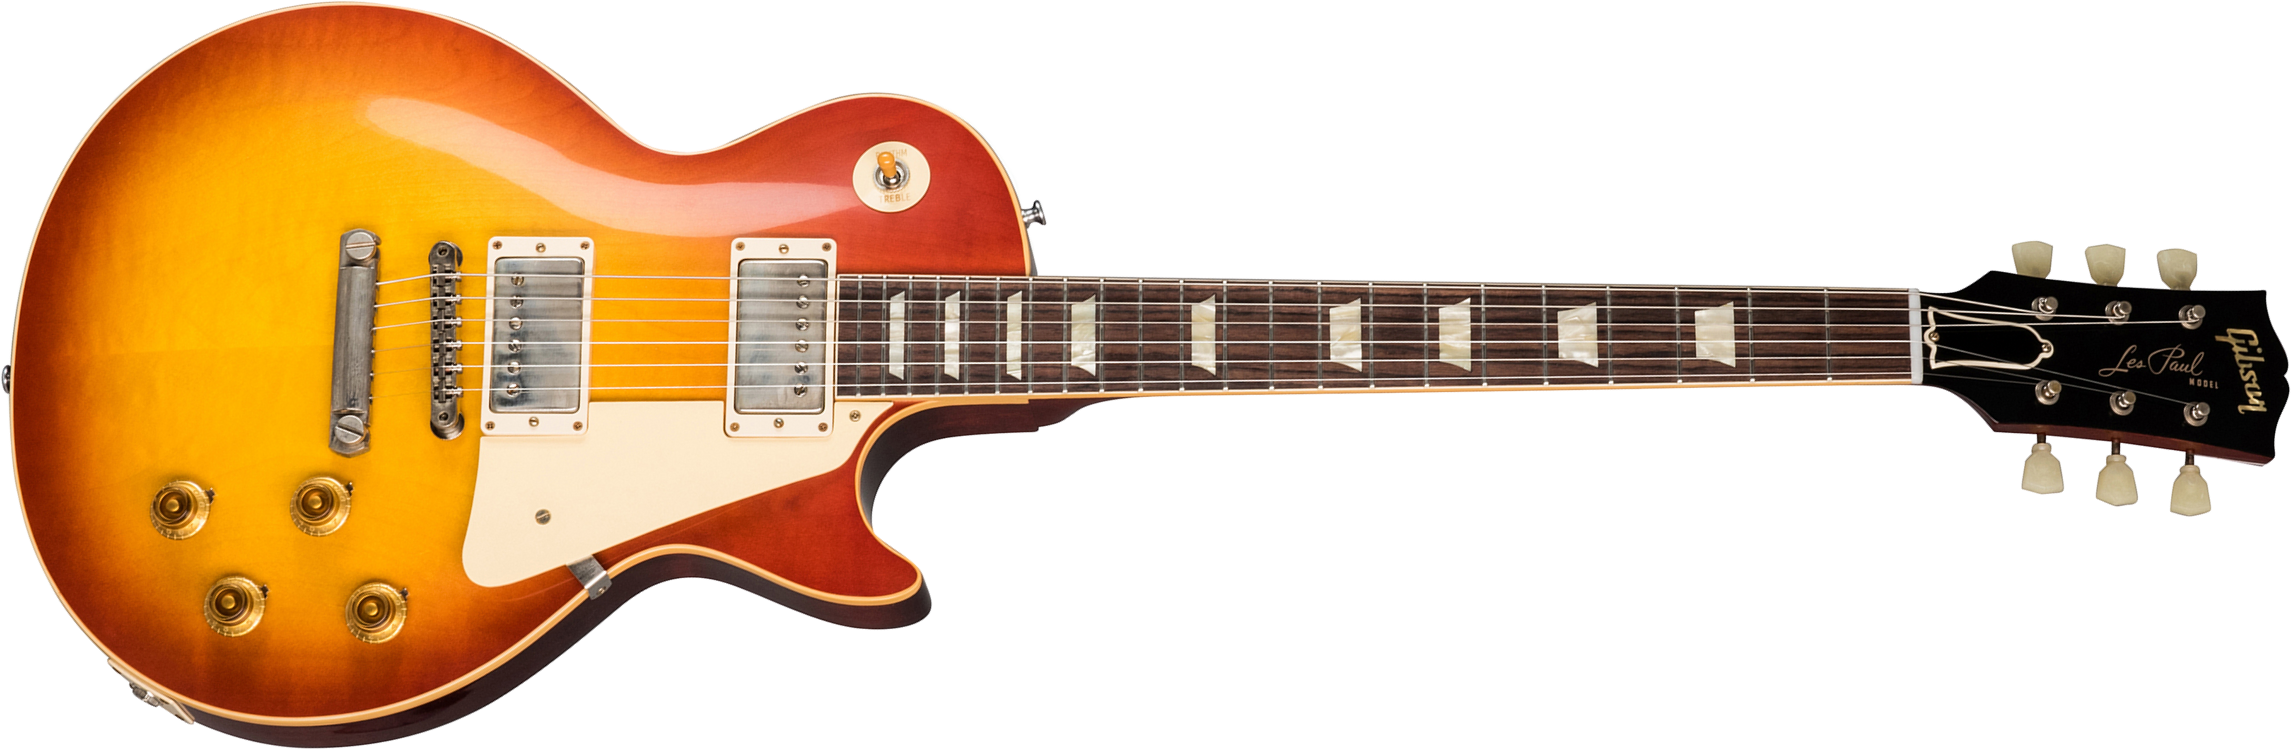 Gibson Custom Shop Les Paul Standard 1958 Reissue 2019 2h Ht Rw - Vos Washed Cherry Sunburst - Enkel gesneden elektrische gitaar - Main picture